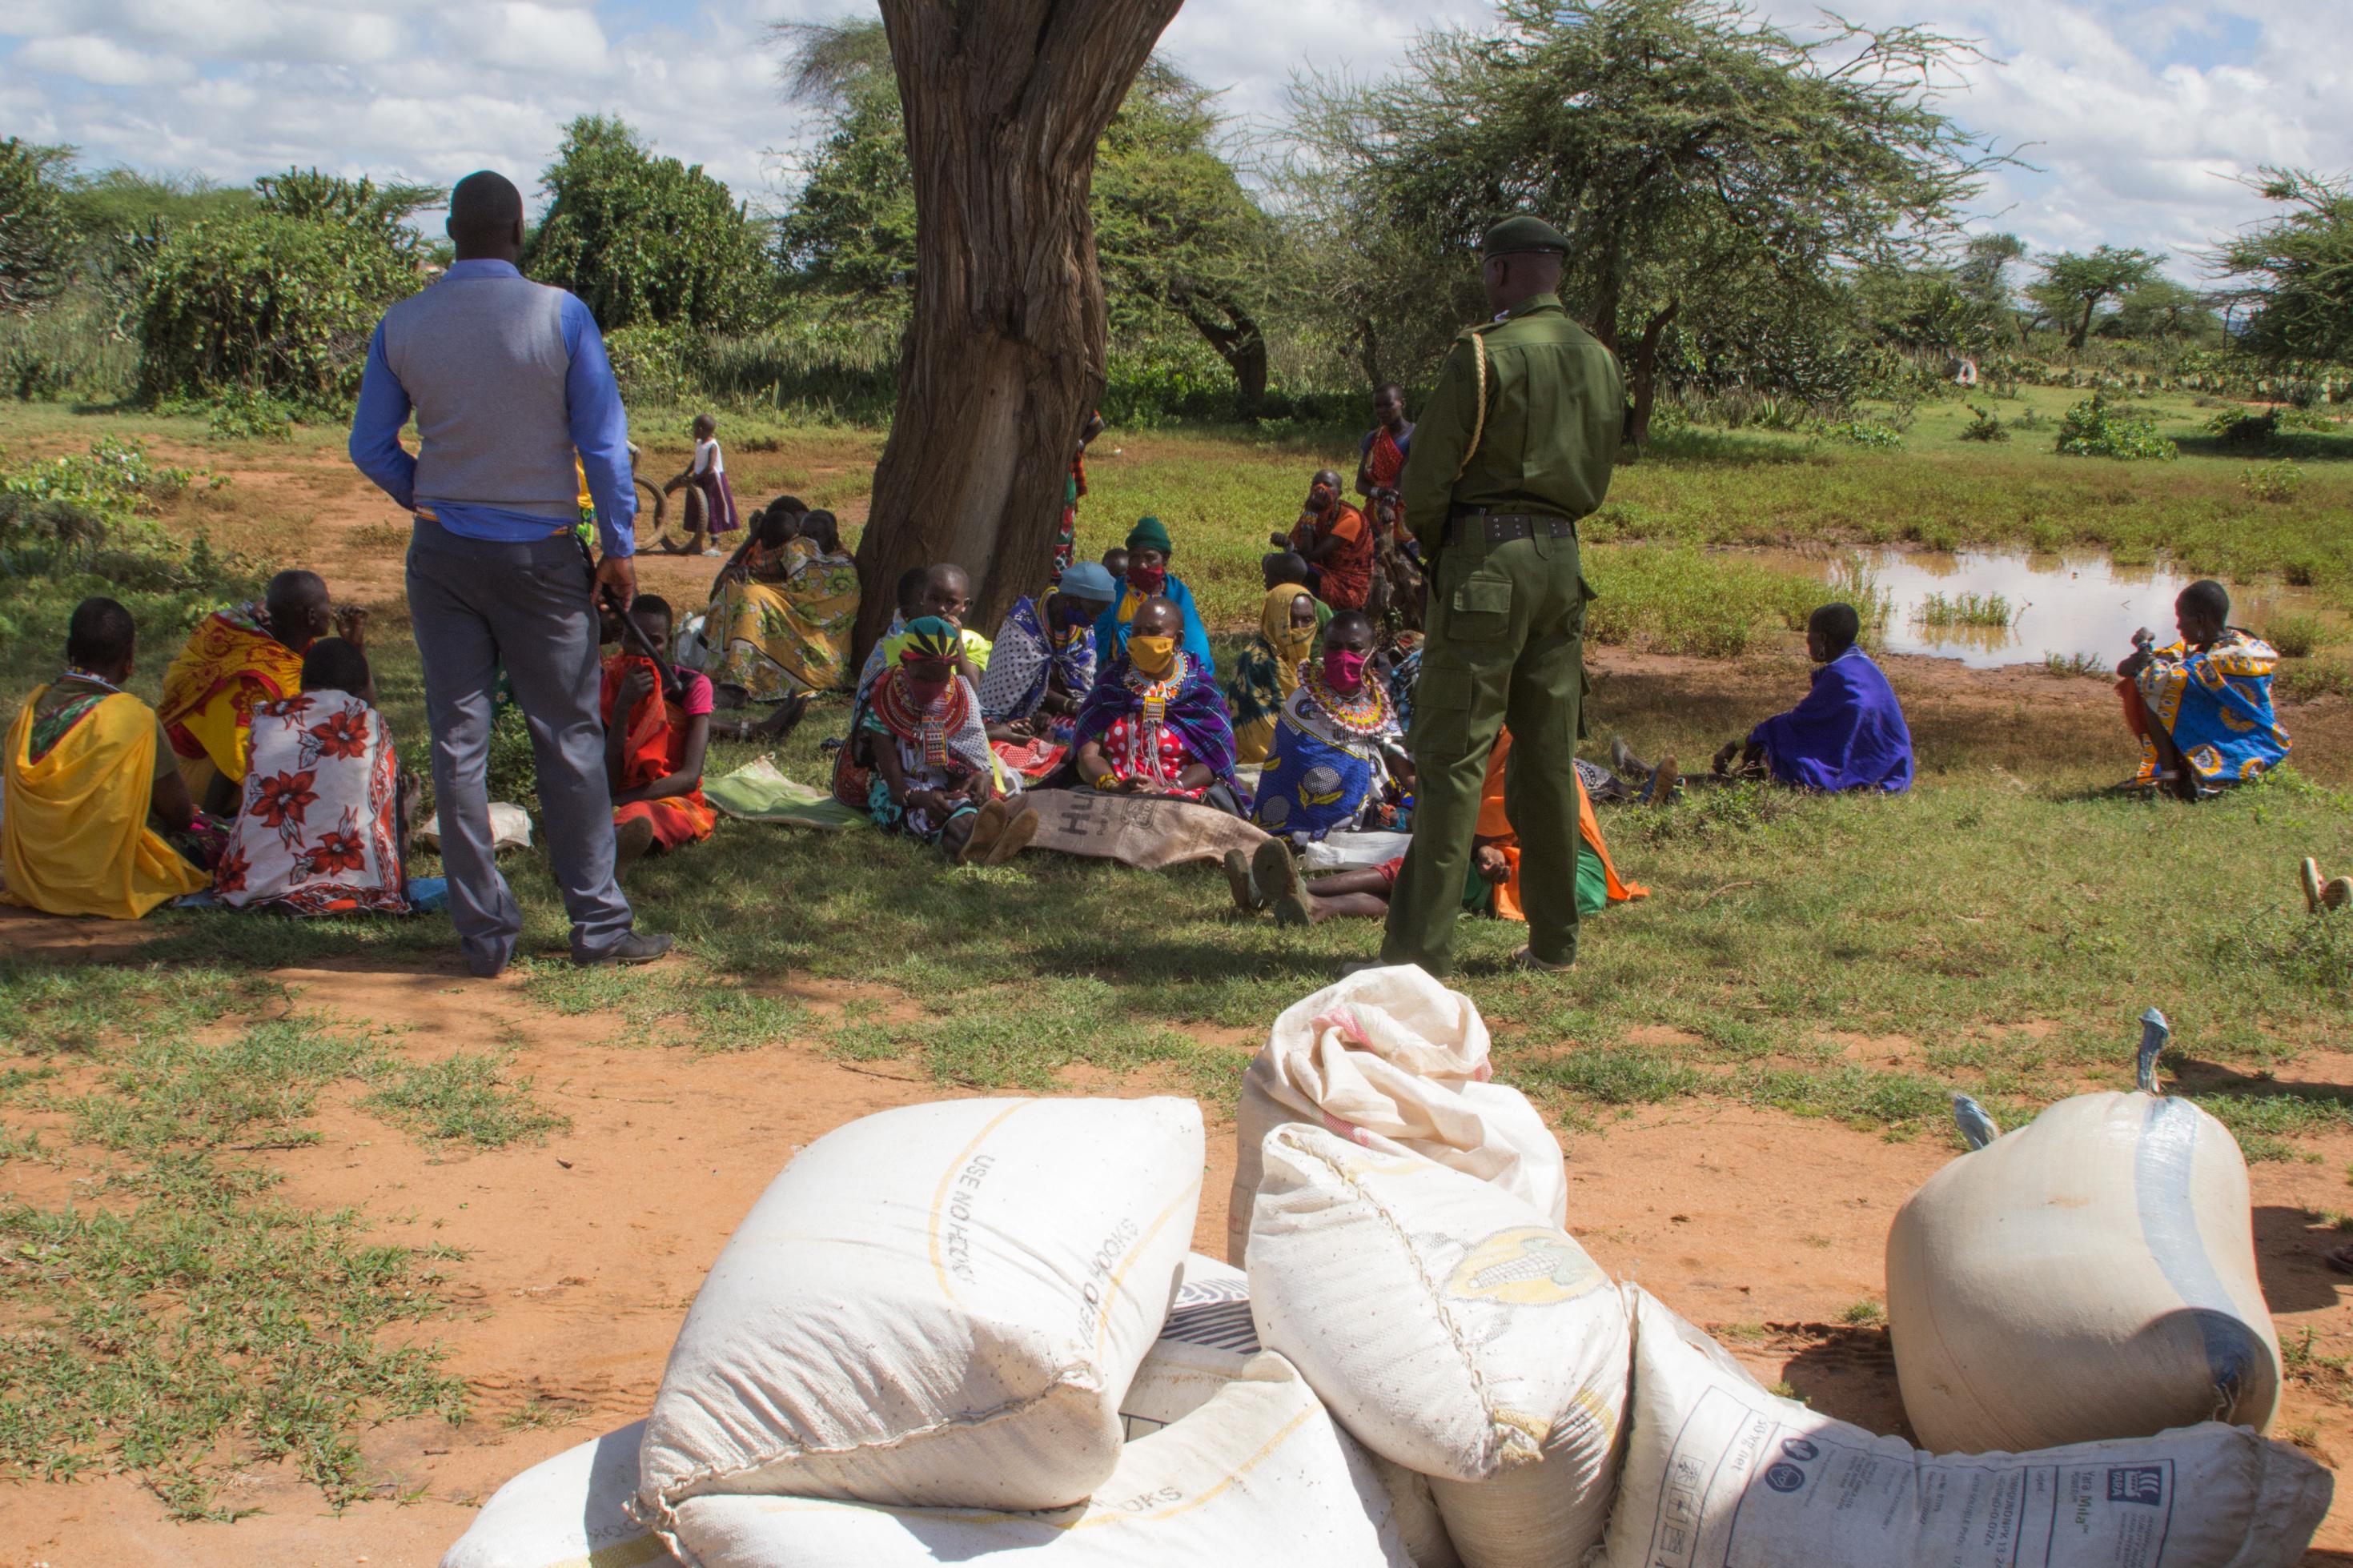 Im Schatten eines Baumes sitzen einige Maasai-Frauen im Gras. Sie haben Säcke dabei, sie warten auf die Verteilung der Lebensmittel, die nun in den Schulen nicht ausgegeben werden können.